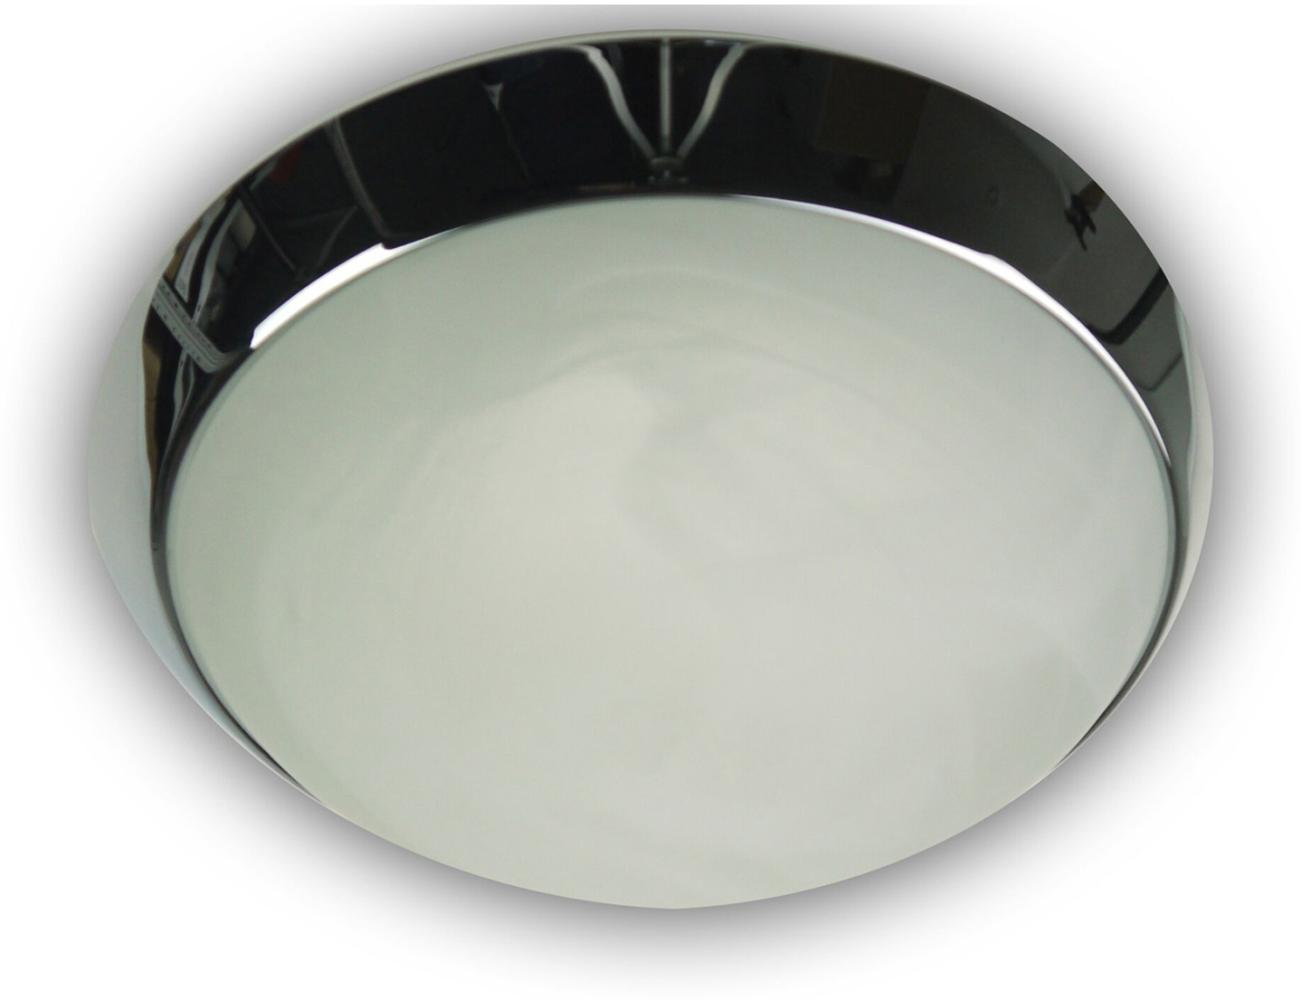 LED Deckenleuchte / Deckenschale rund, Glas Alabaster, Dekorring Chrom, Ø 40cm Bild 1